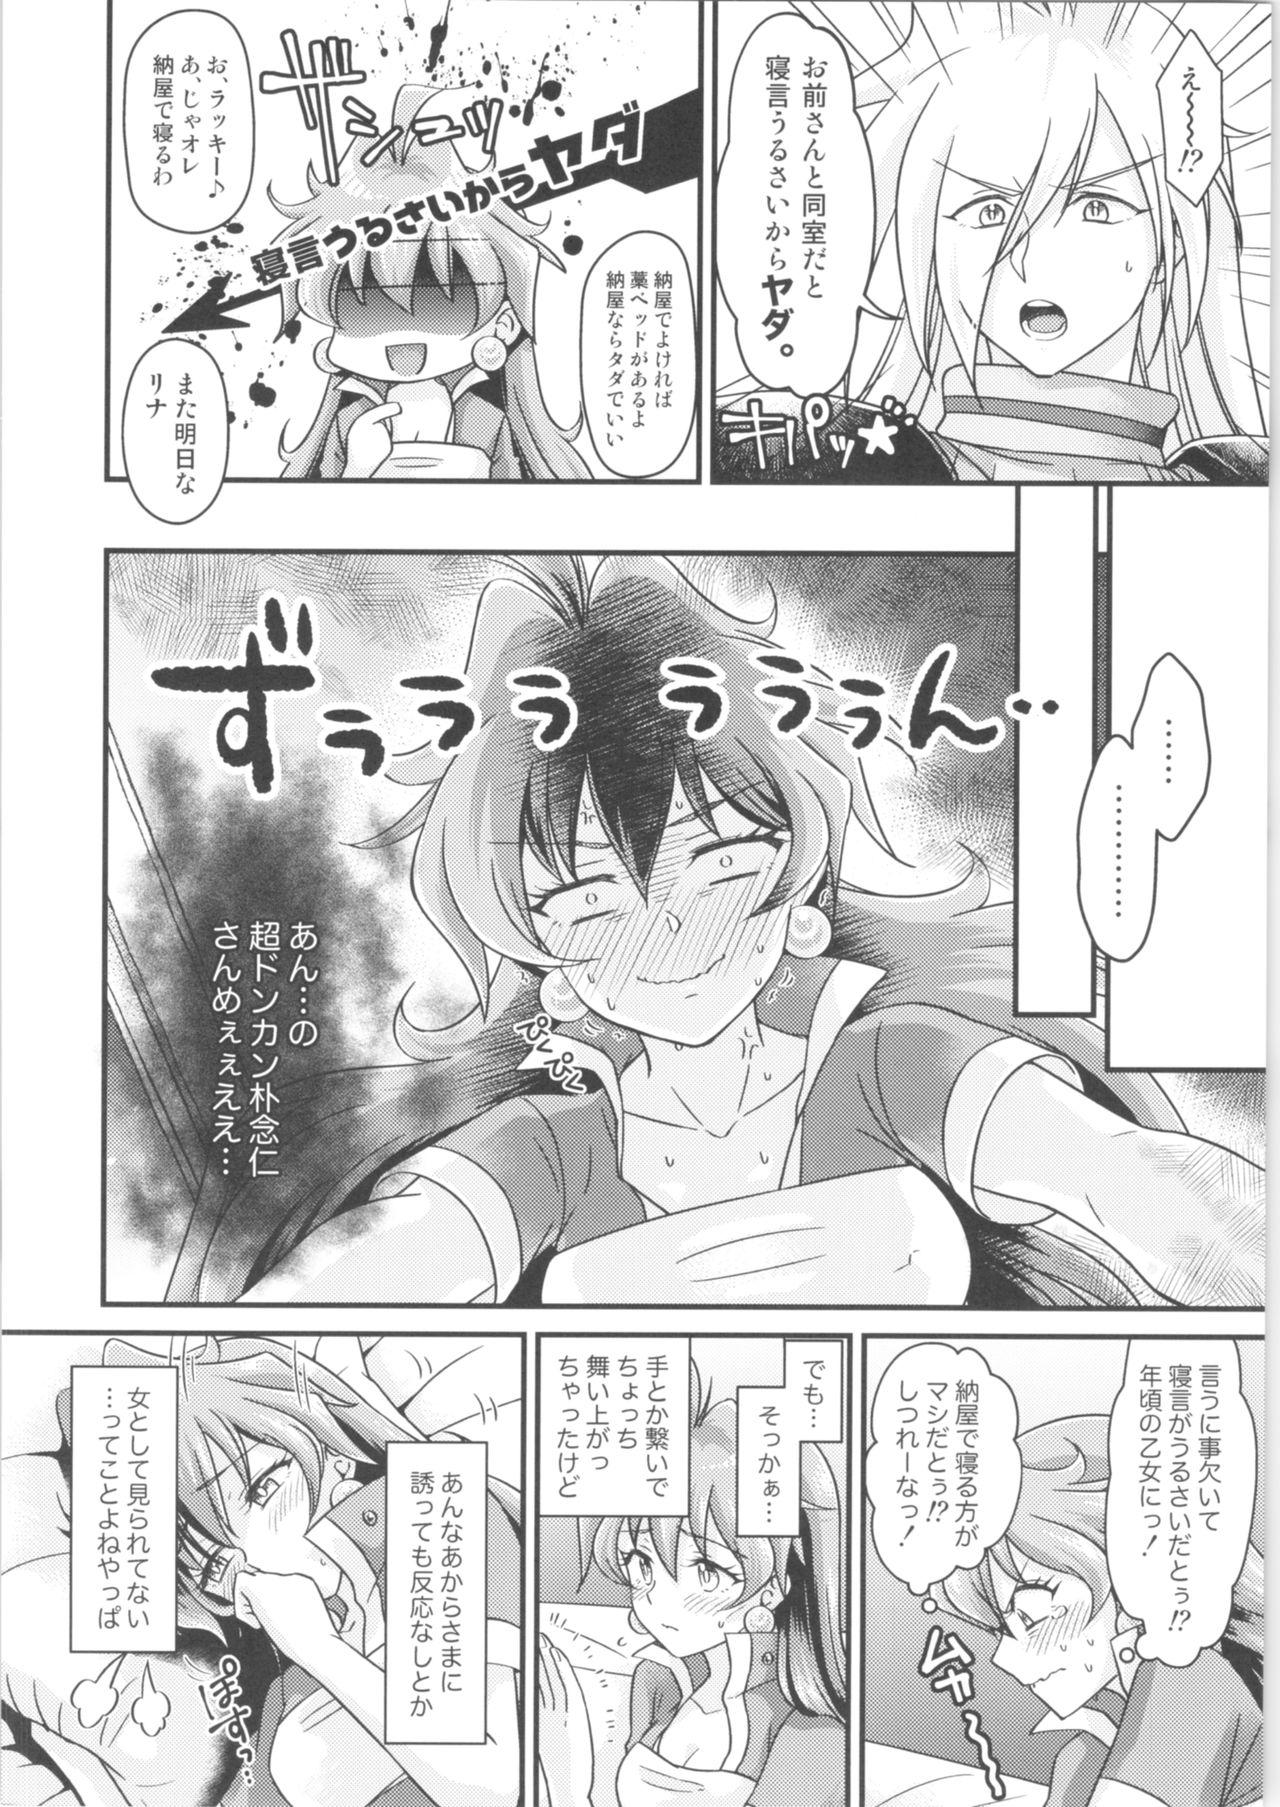 Escort Lina Inverse Juu Shinkan ni NTR Kairaku Ochi - Slayers Soloboy - Page 5